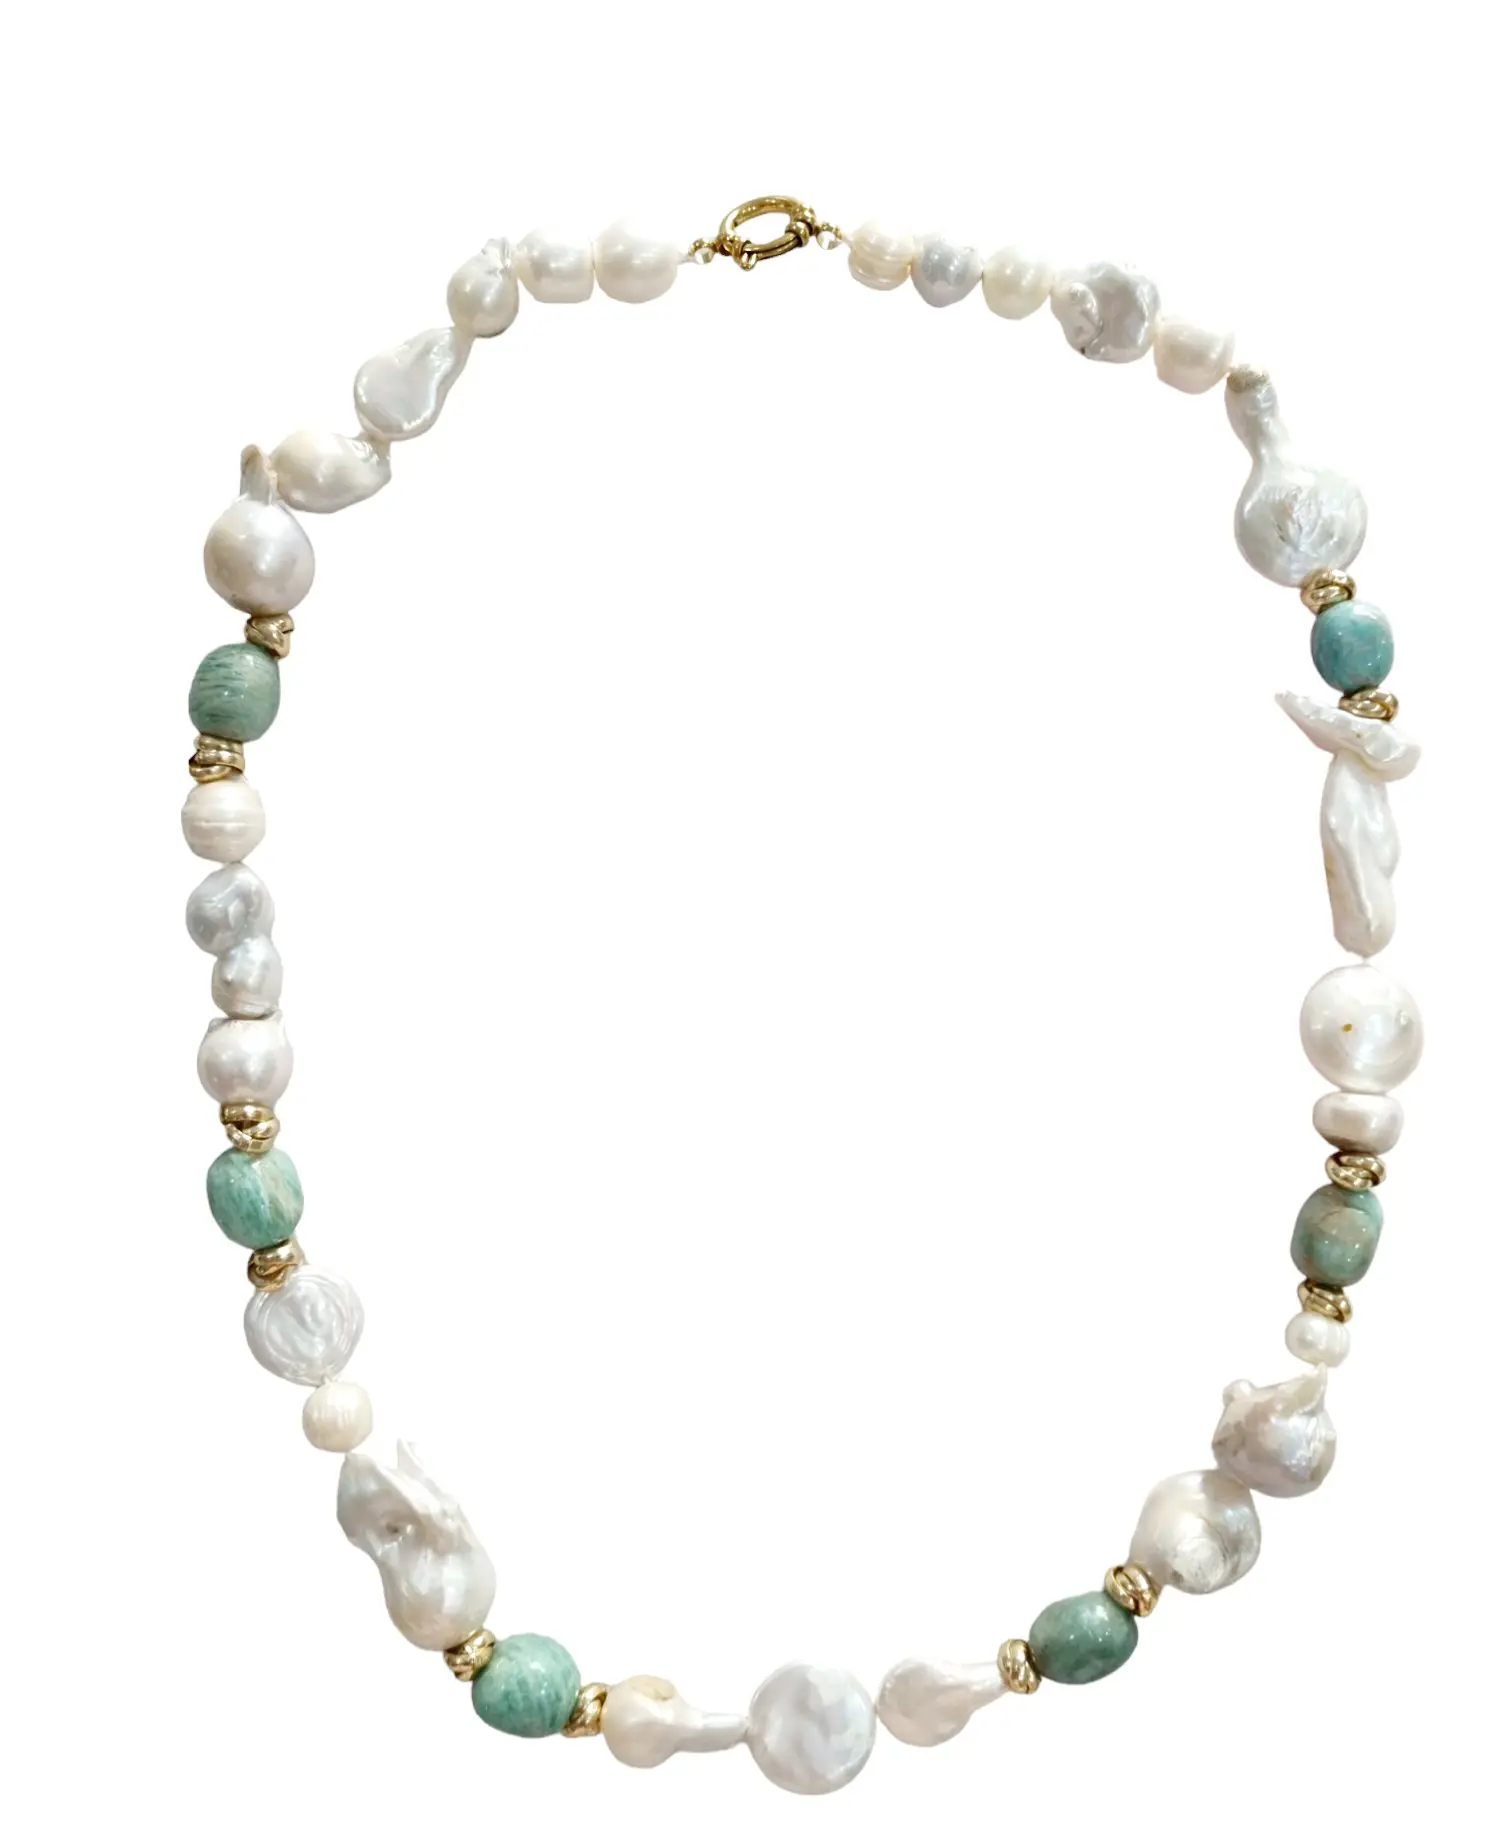 Halskette aus Scaramazze-Perlen, Barockperlen und Amazonit. Stahlverschluss. Länge 61 cm